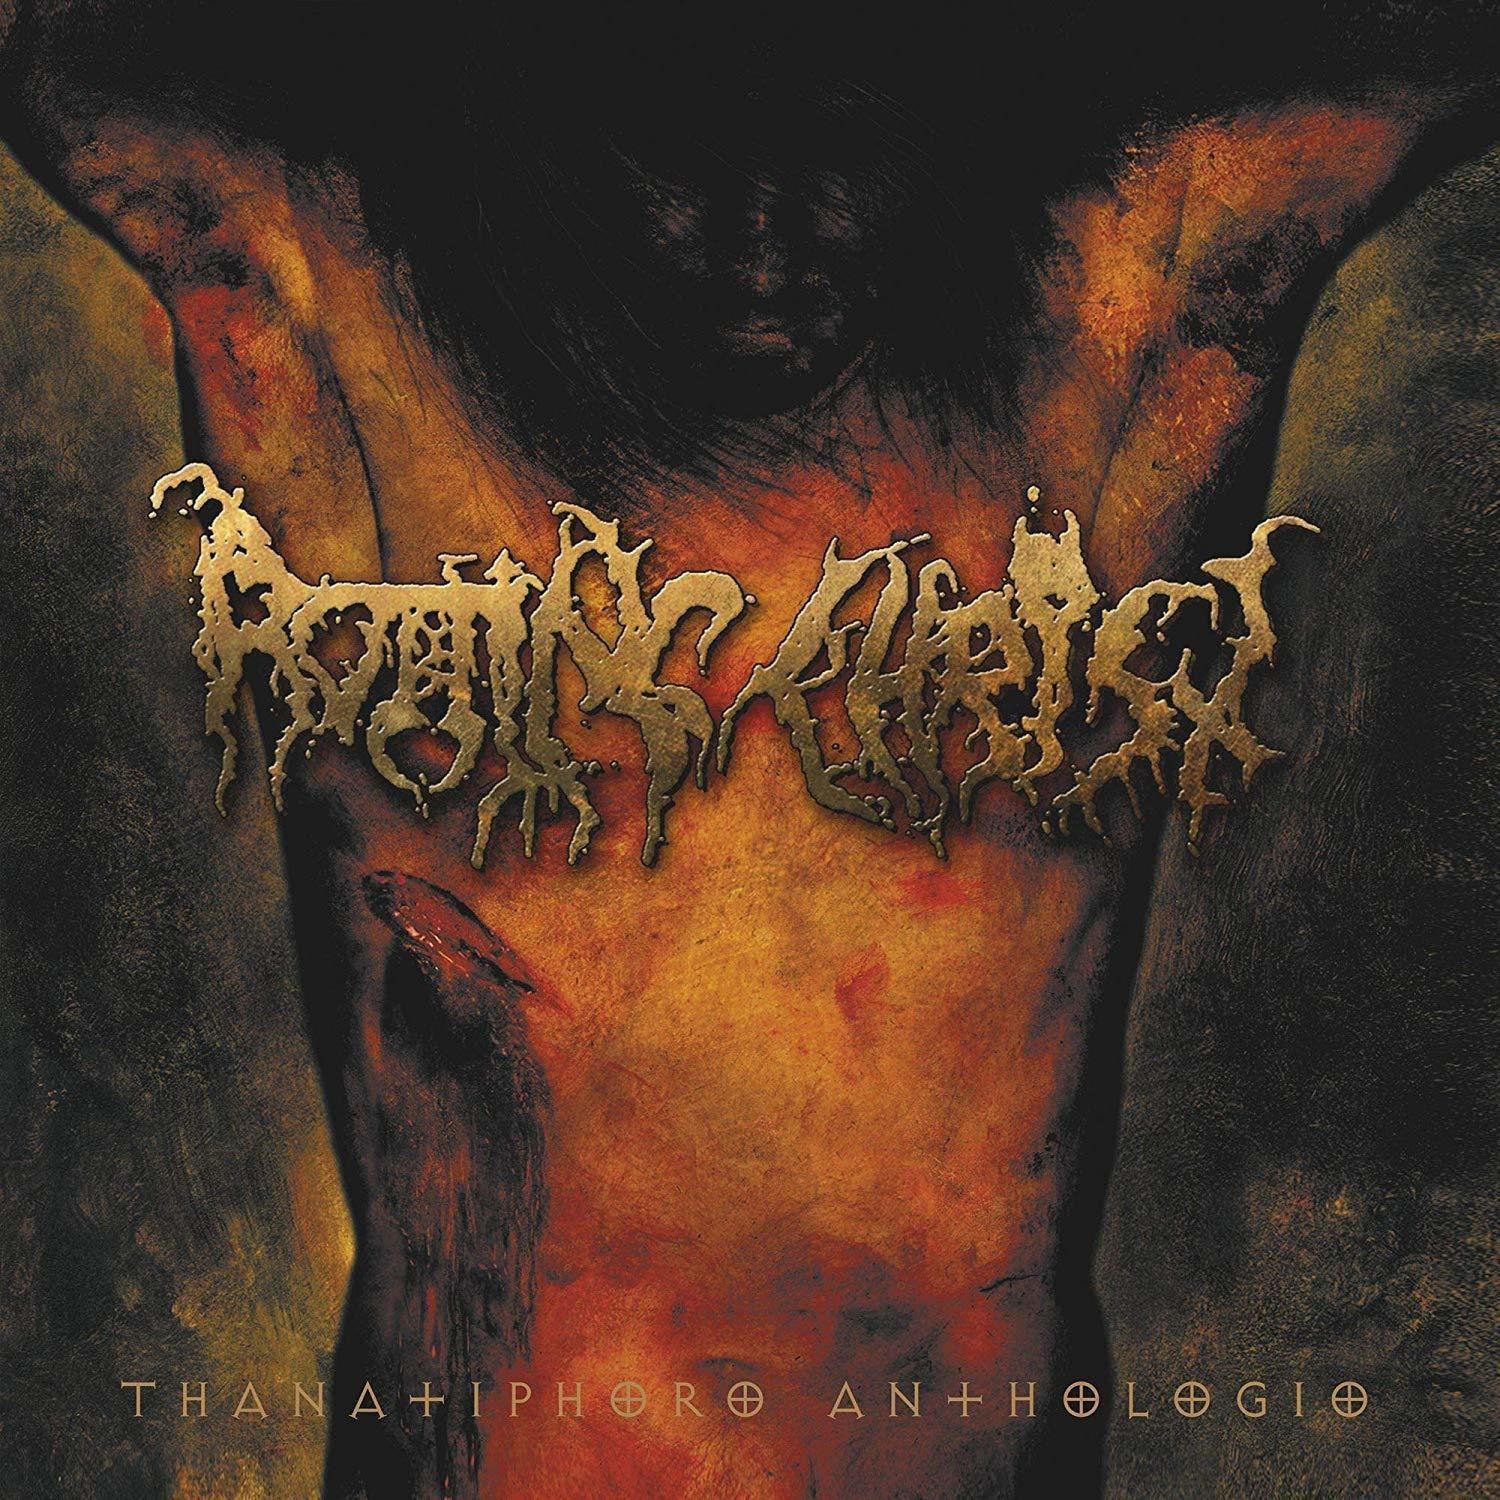 Hanglemez Rotting Christ - Thanatiphoro Anthologio (Limited Edition) (3 LP)